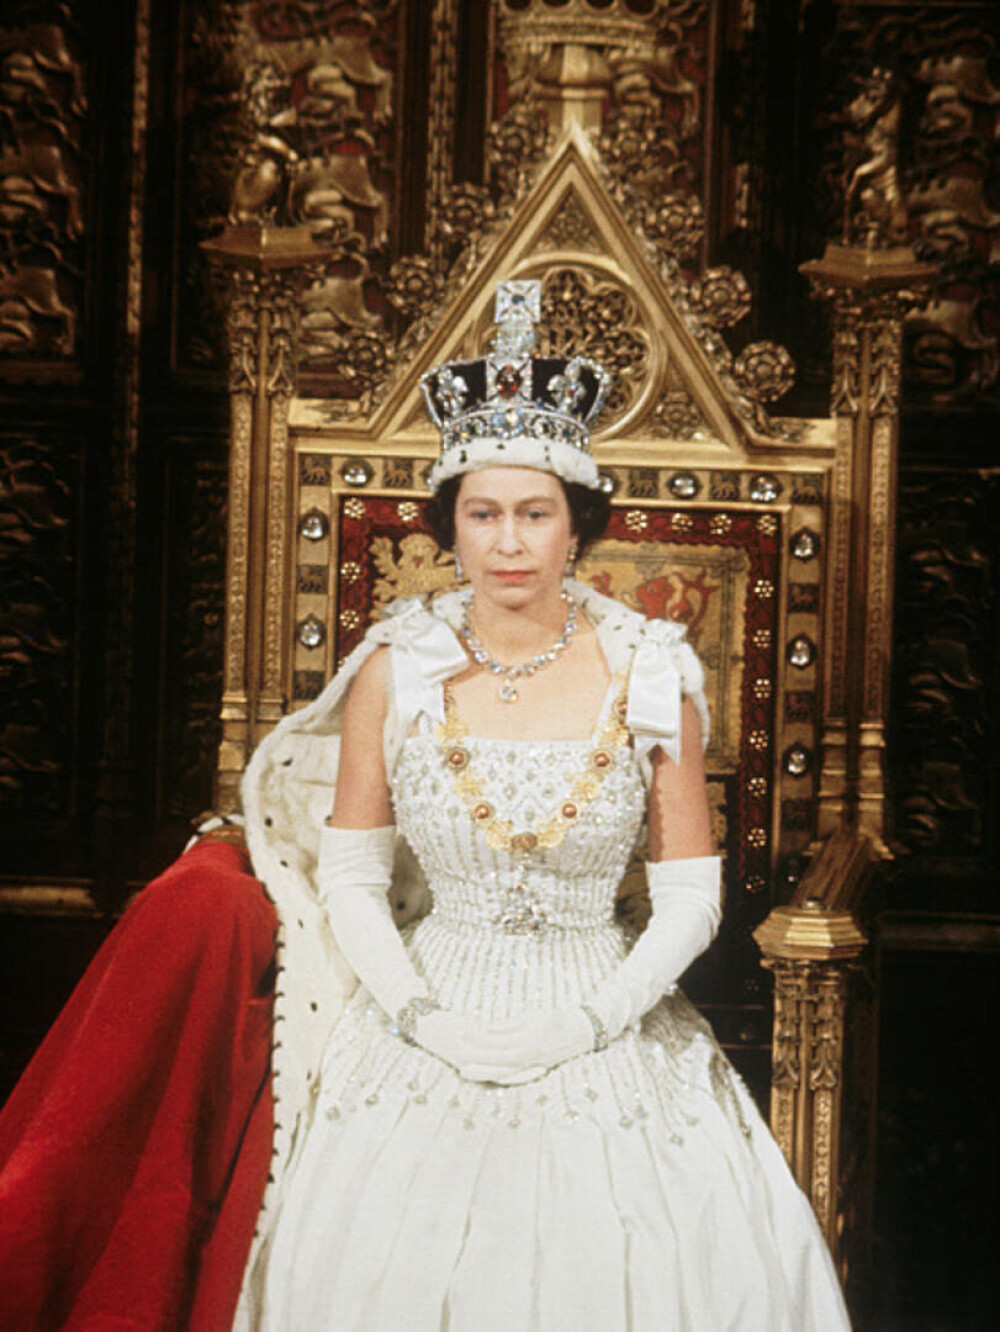 Viața Reginei Elisabeta în imagini. În cei peste 70 de ani de domnie, a devenit al doilea cel mai longeviv monarh din istorie - Imaginea 36